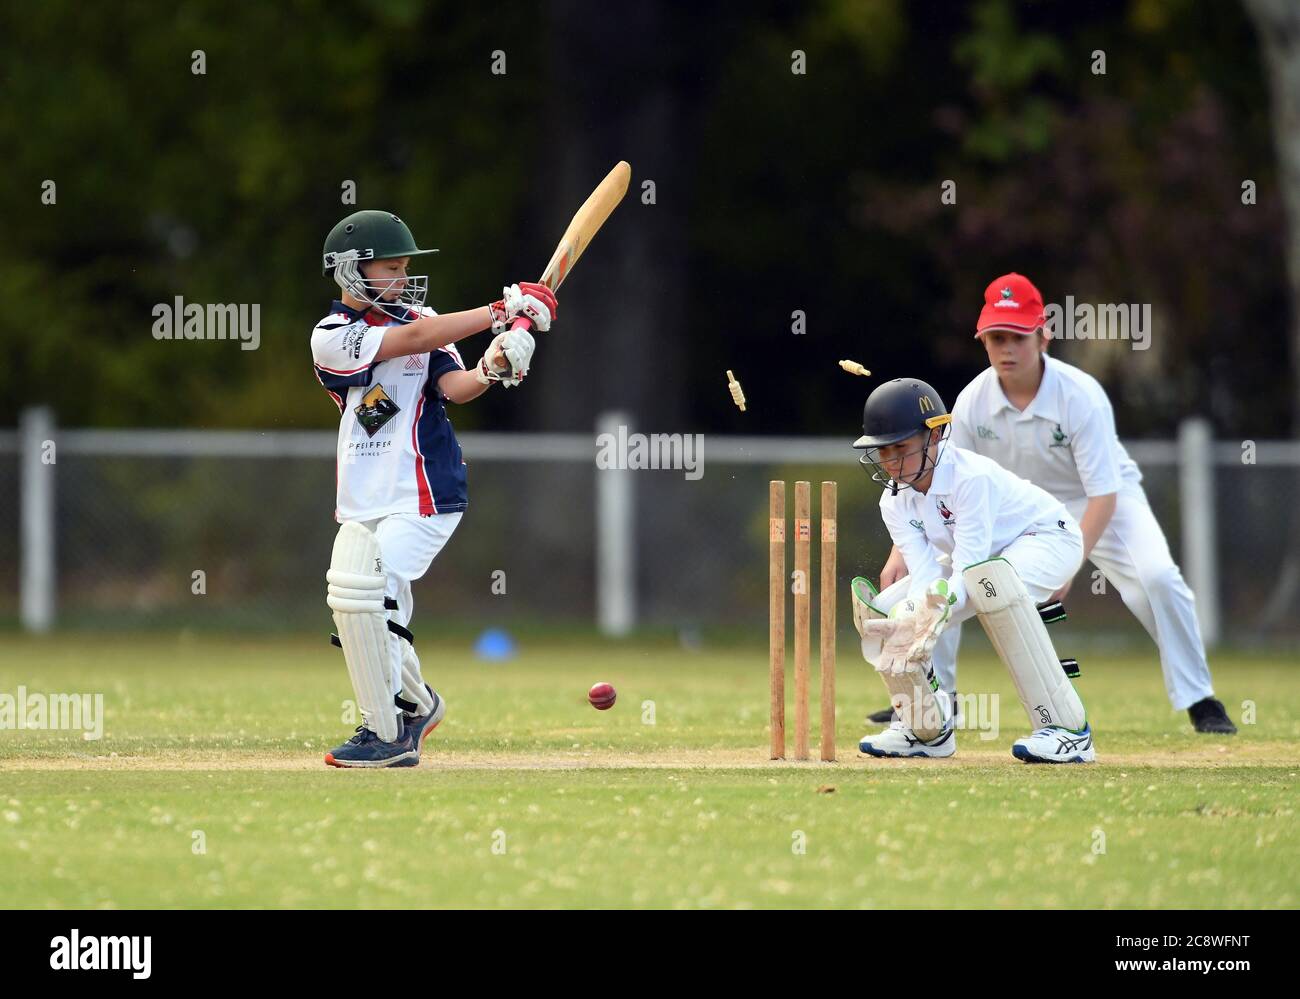 Bails fliegen über die Stumps, während ein Cricketer während eines Cricket-Spiels unter 16 Jahren in Victoria, Australien, ausgebowelt wird Stockfoto